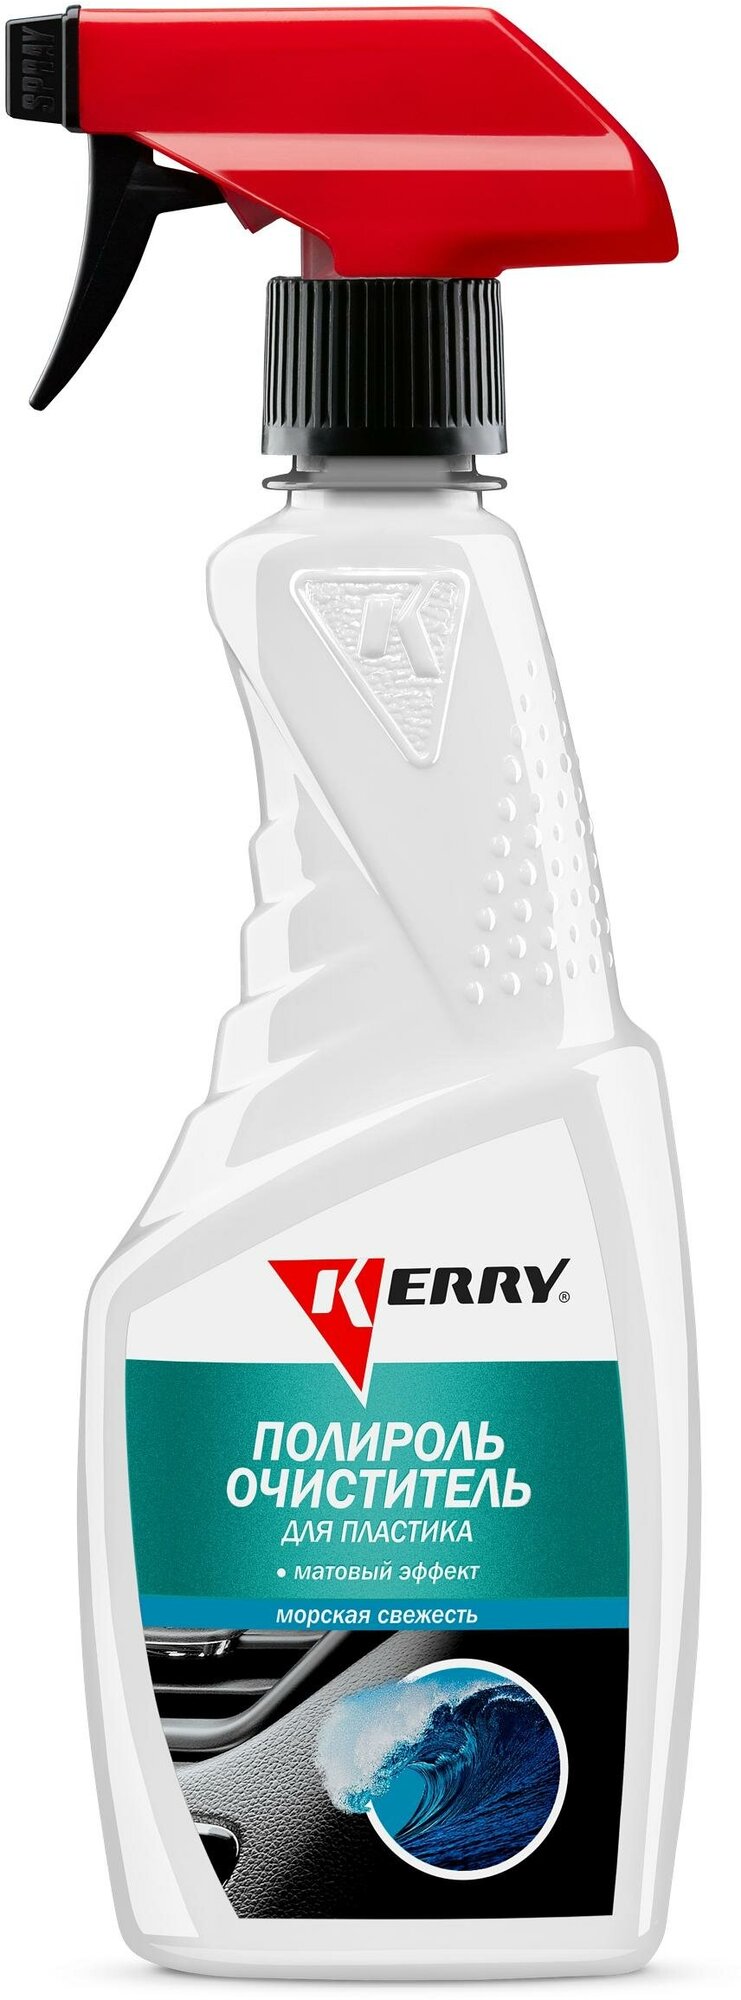 Полироль-очиститель пластика салона с матовым эффектом морская свежесть KERRY KR-505-10 1 шт.